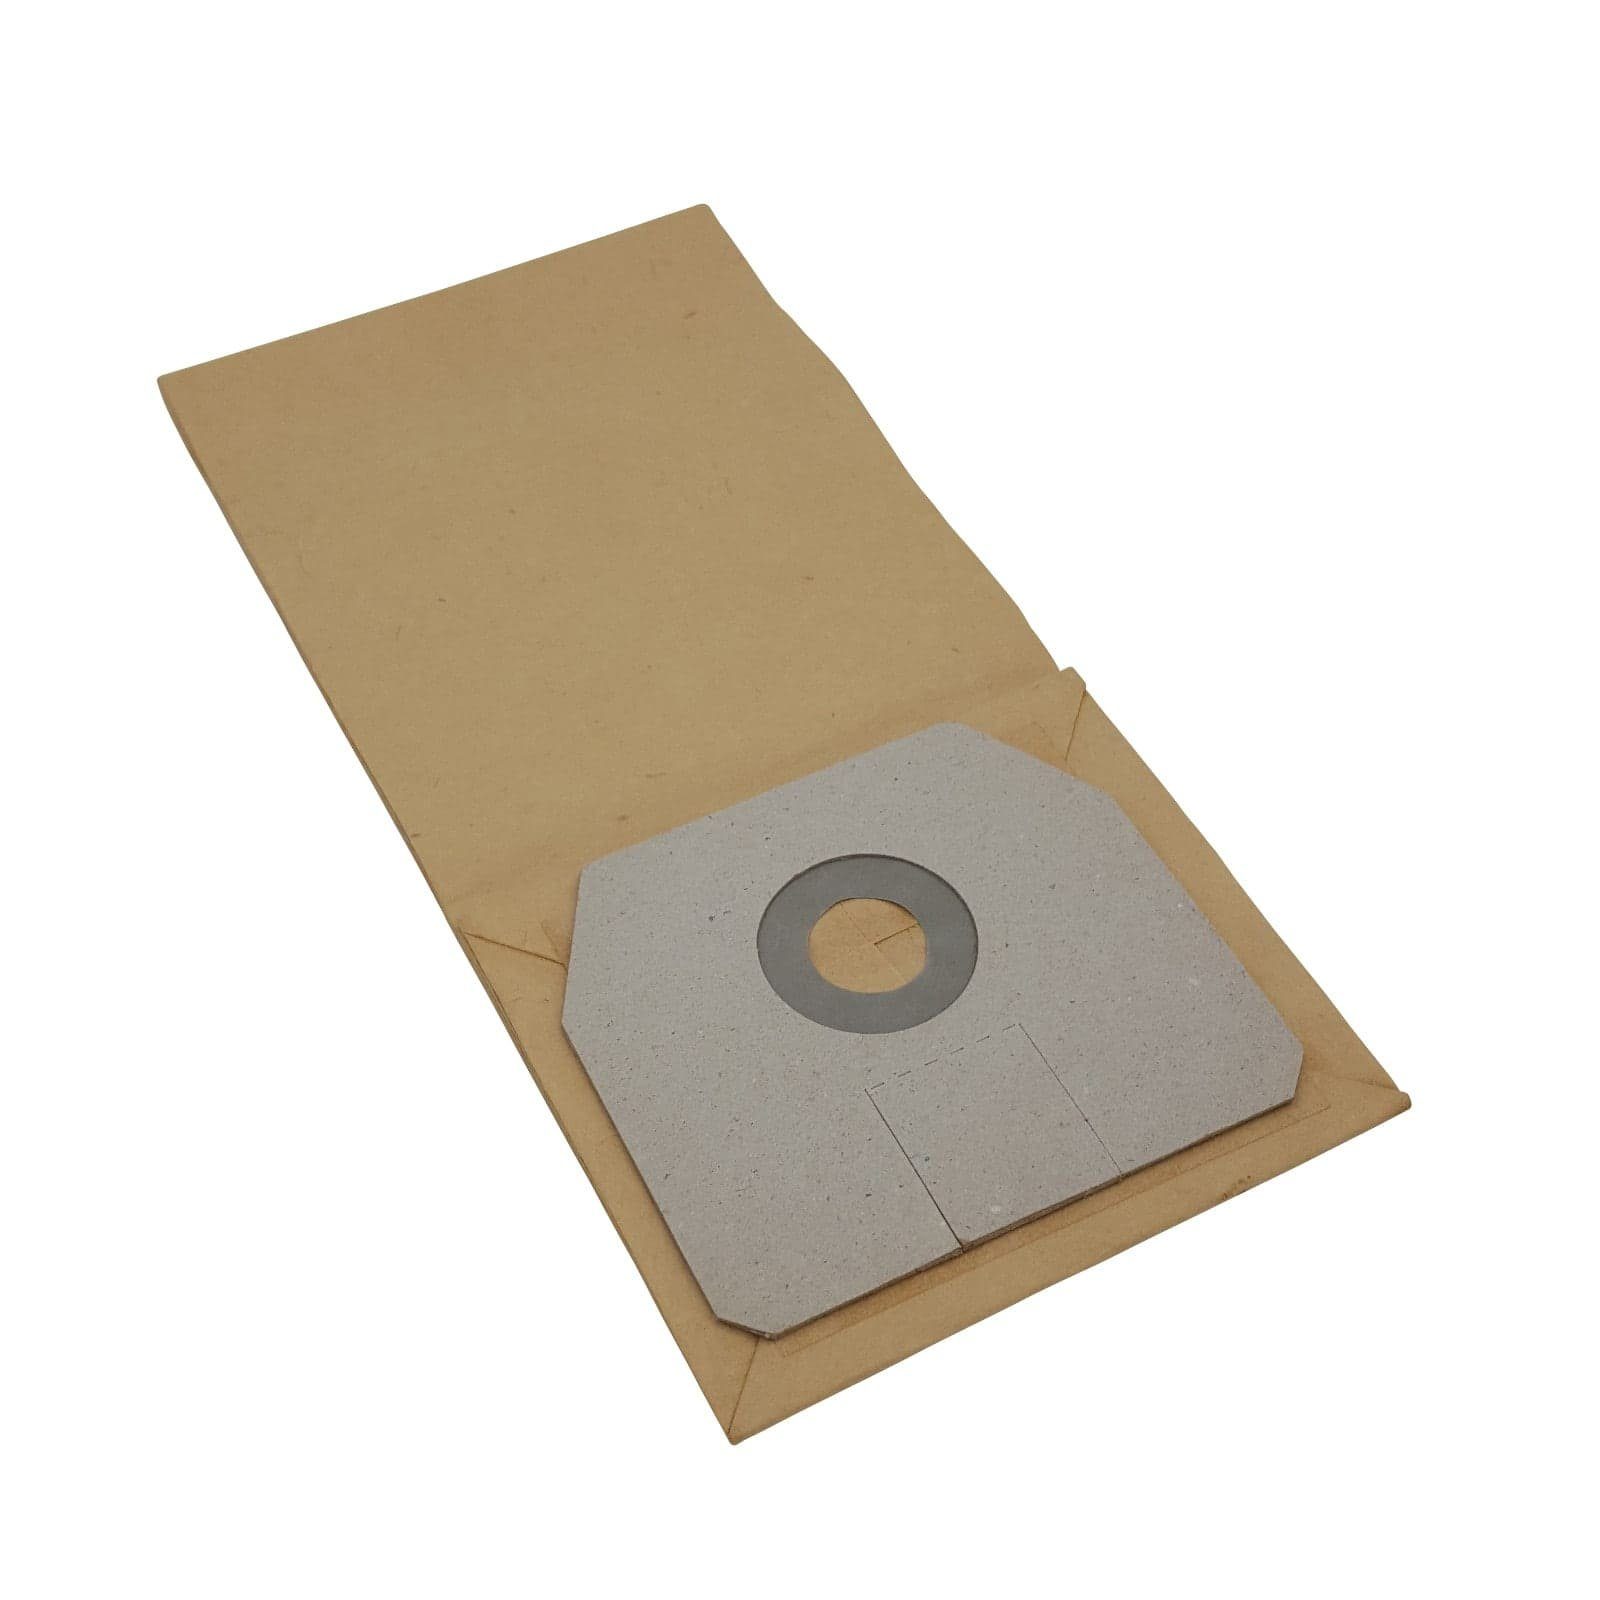 Reinica Staubsaugerbeutel passend für Clean a la Card RS 09, 10er-Pack Staubbeutel Saugerbeutel Beutel Filtertüten